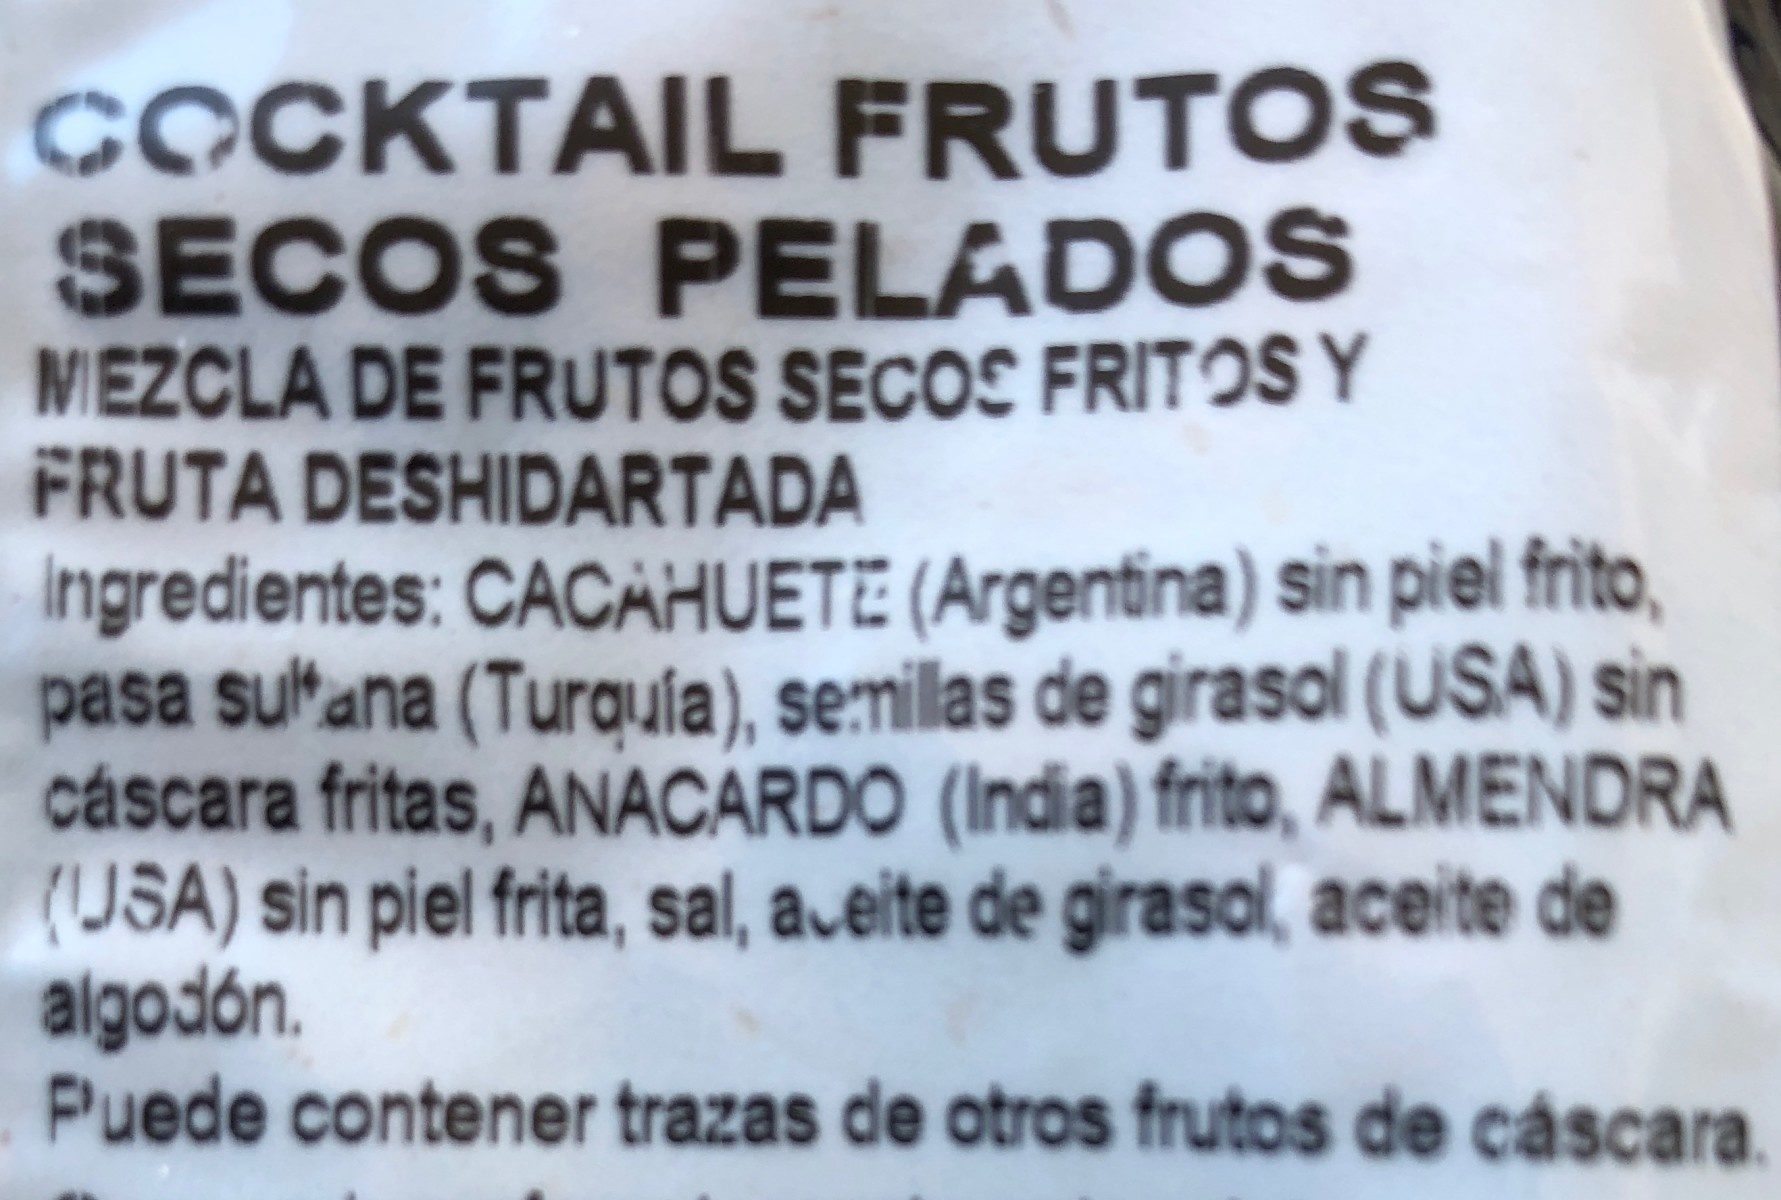 Frutos secos - Ingredients - fr